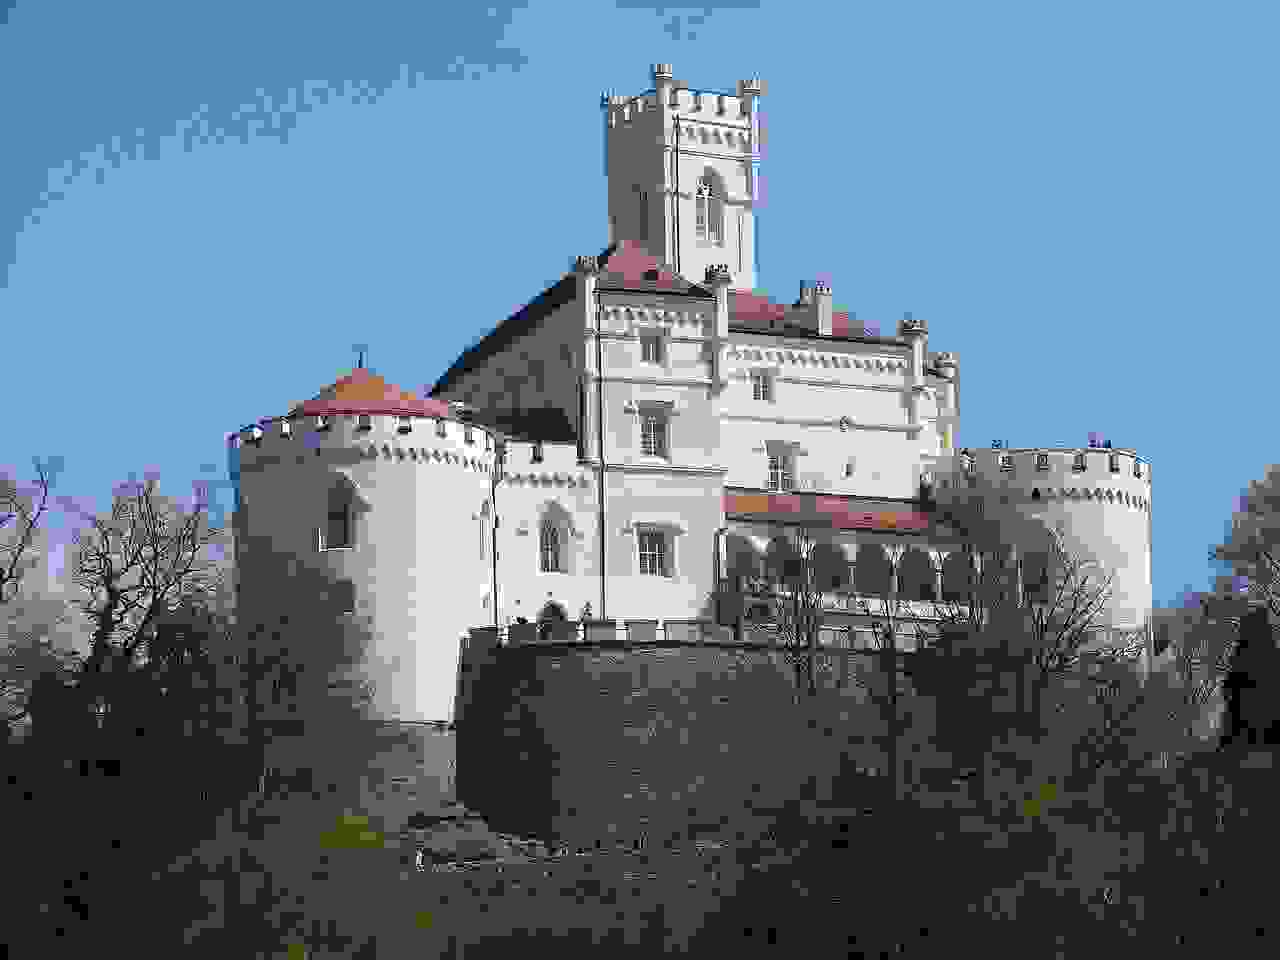 Trakošćan Castle, Croatia